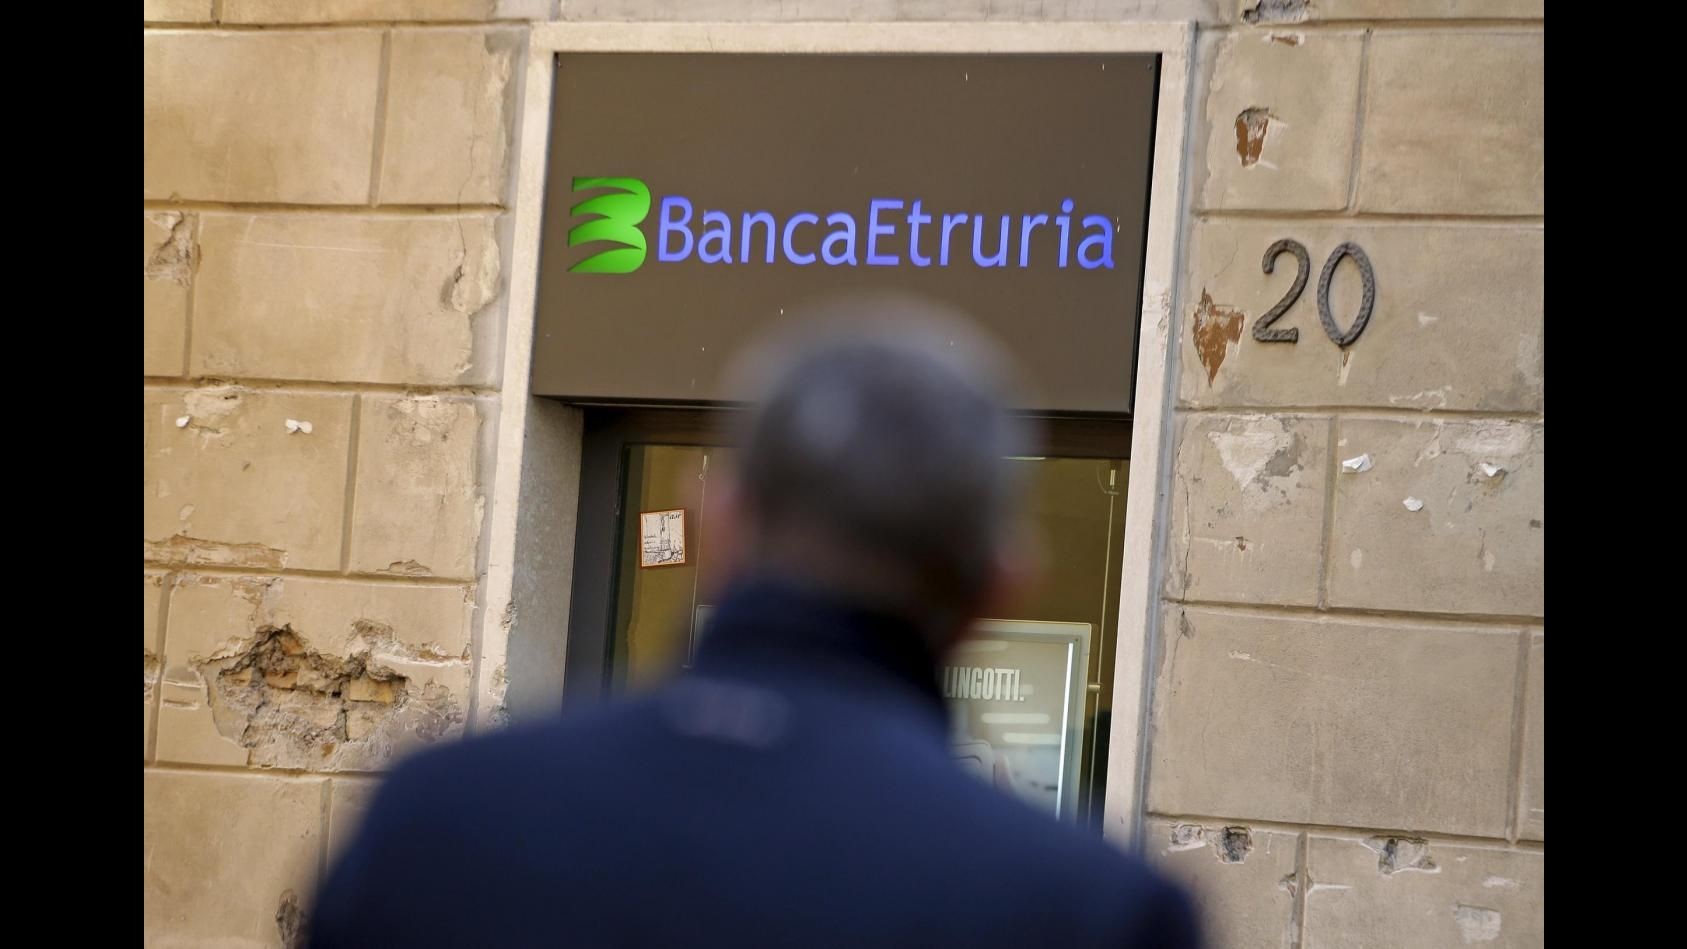 Banche, Consiglio Superiore Magistratura apre pratica su procuratore Arezzo